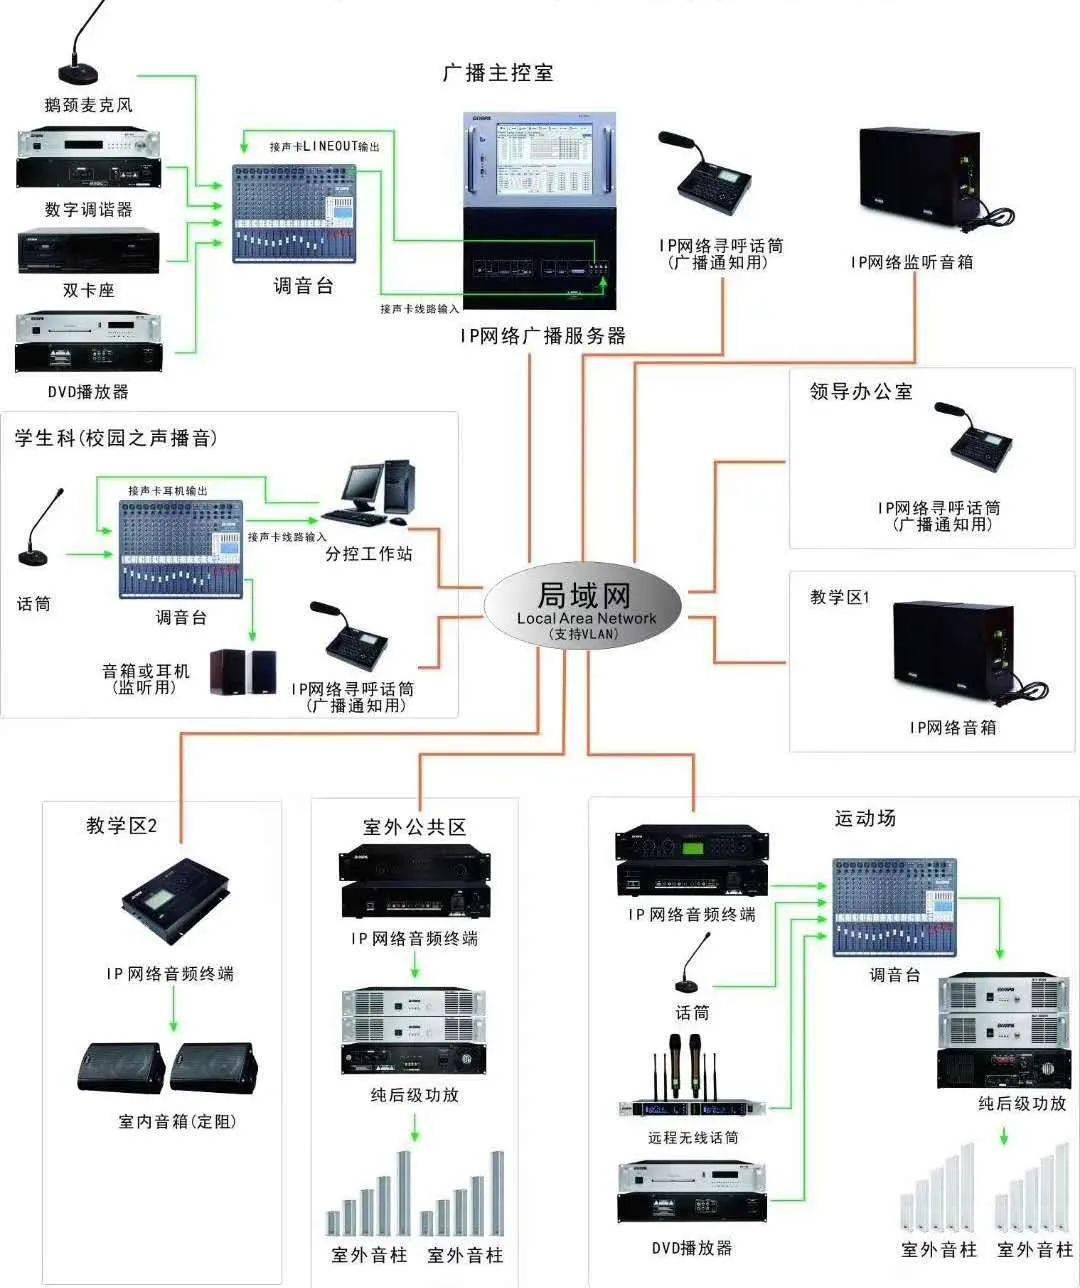 1,校园ip网络广播系统图 一,全光网络连接示意图 一,ip五方通话系统